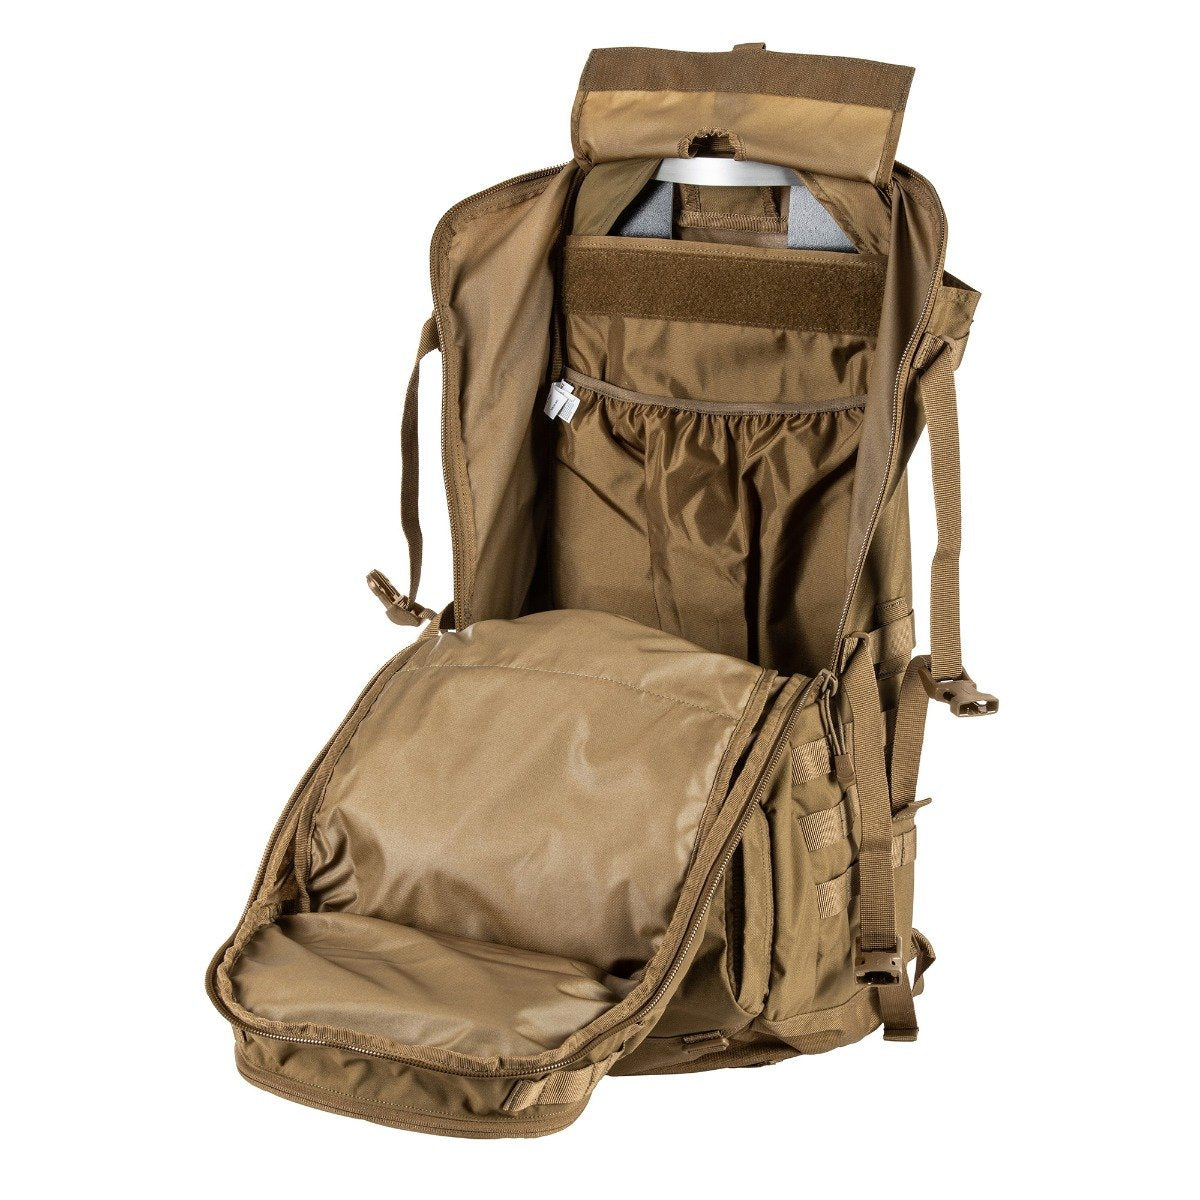 5.11 Tactical Rush 100 60L Backpack Kangaroo Bags, Packs and Cases 5.11 Tactical Tactical Gear Supplier Tactical Distributors Australia